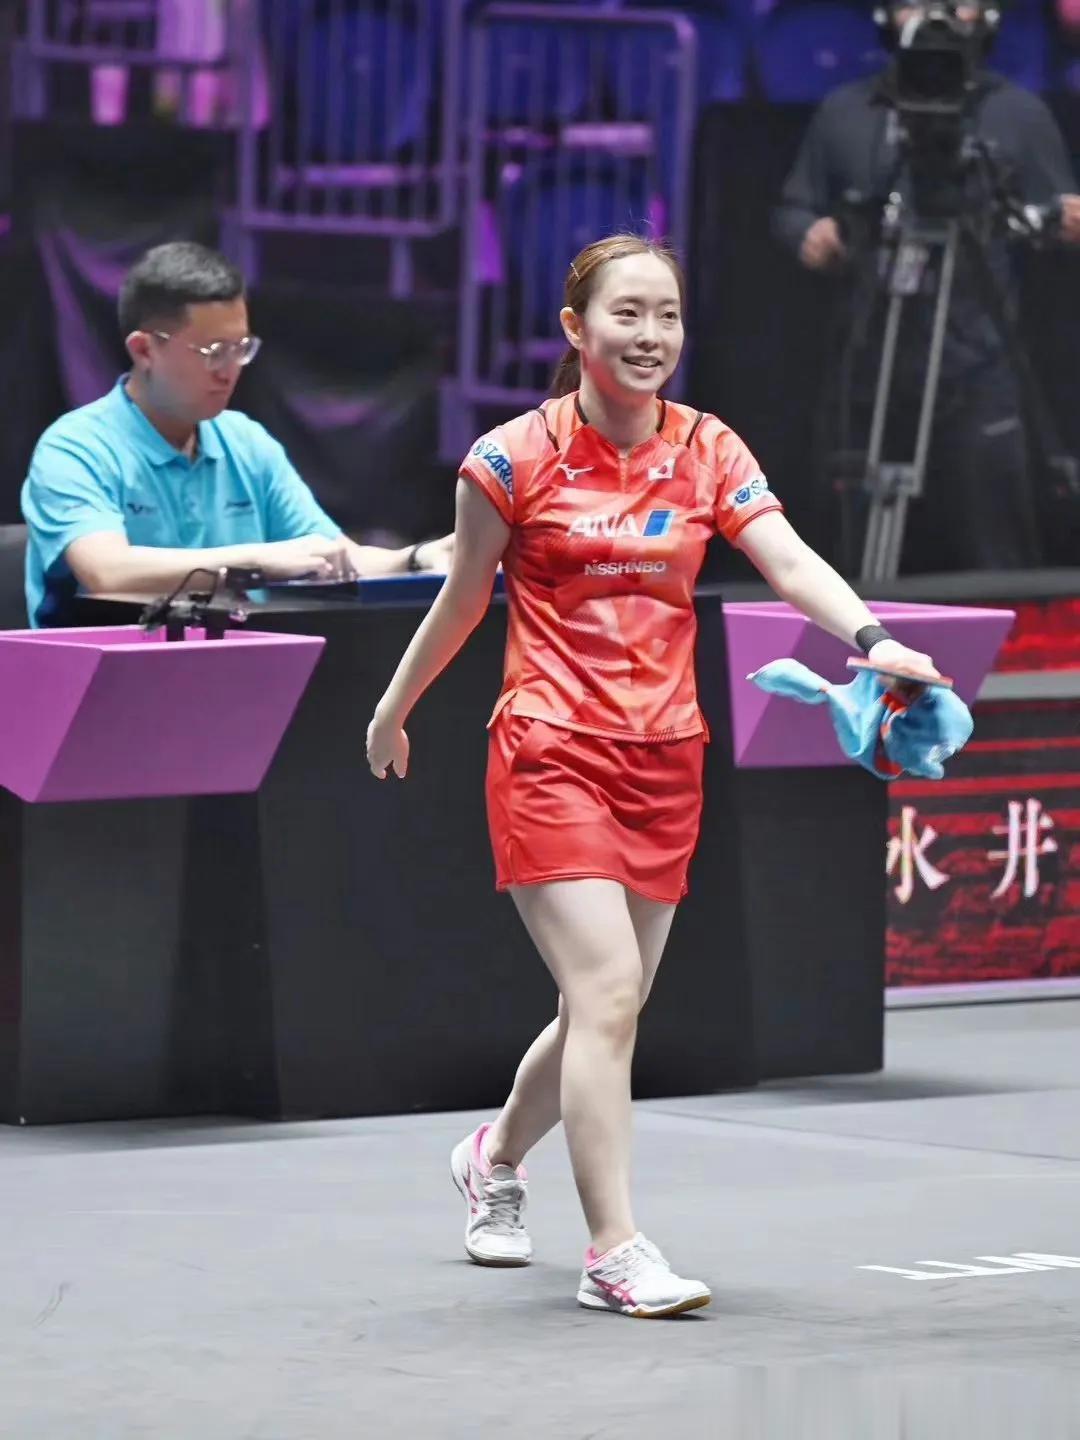 真没想到！一个日本乒乓球员在中国居然有这么多狂热的粉丝！

最近石川佳纯正在中国(4)